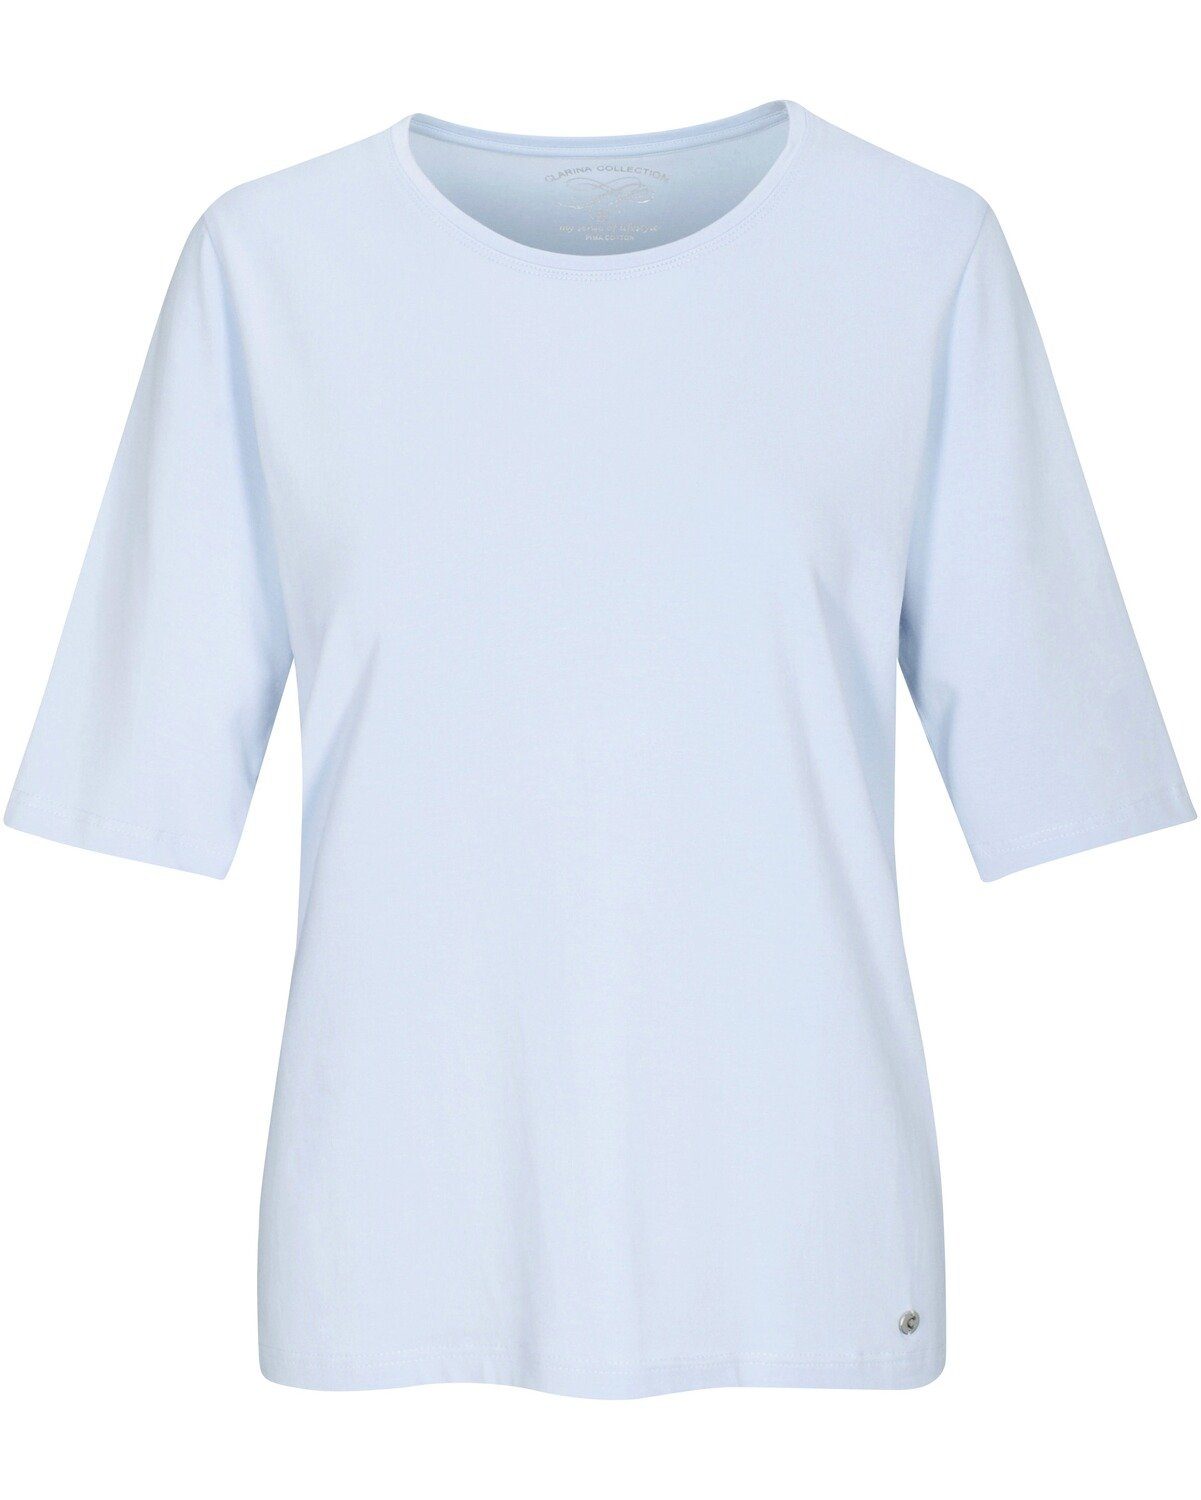 Clarina Bleu Halbarm-Shirt T-Shirt